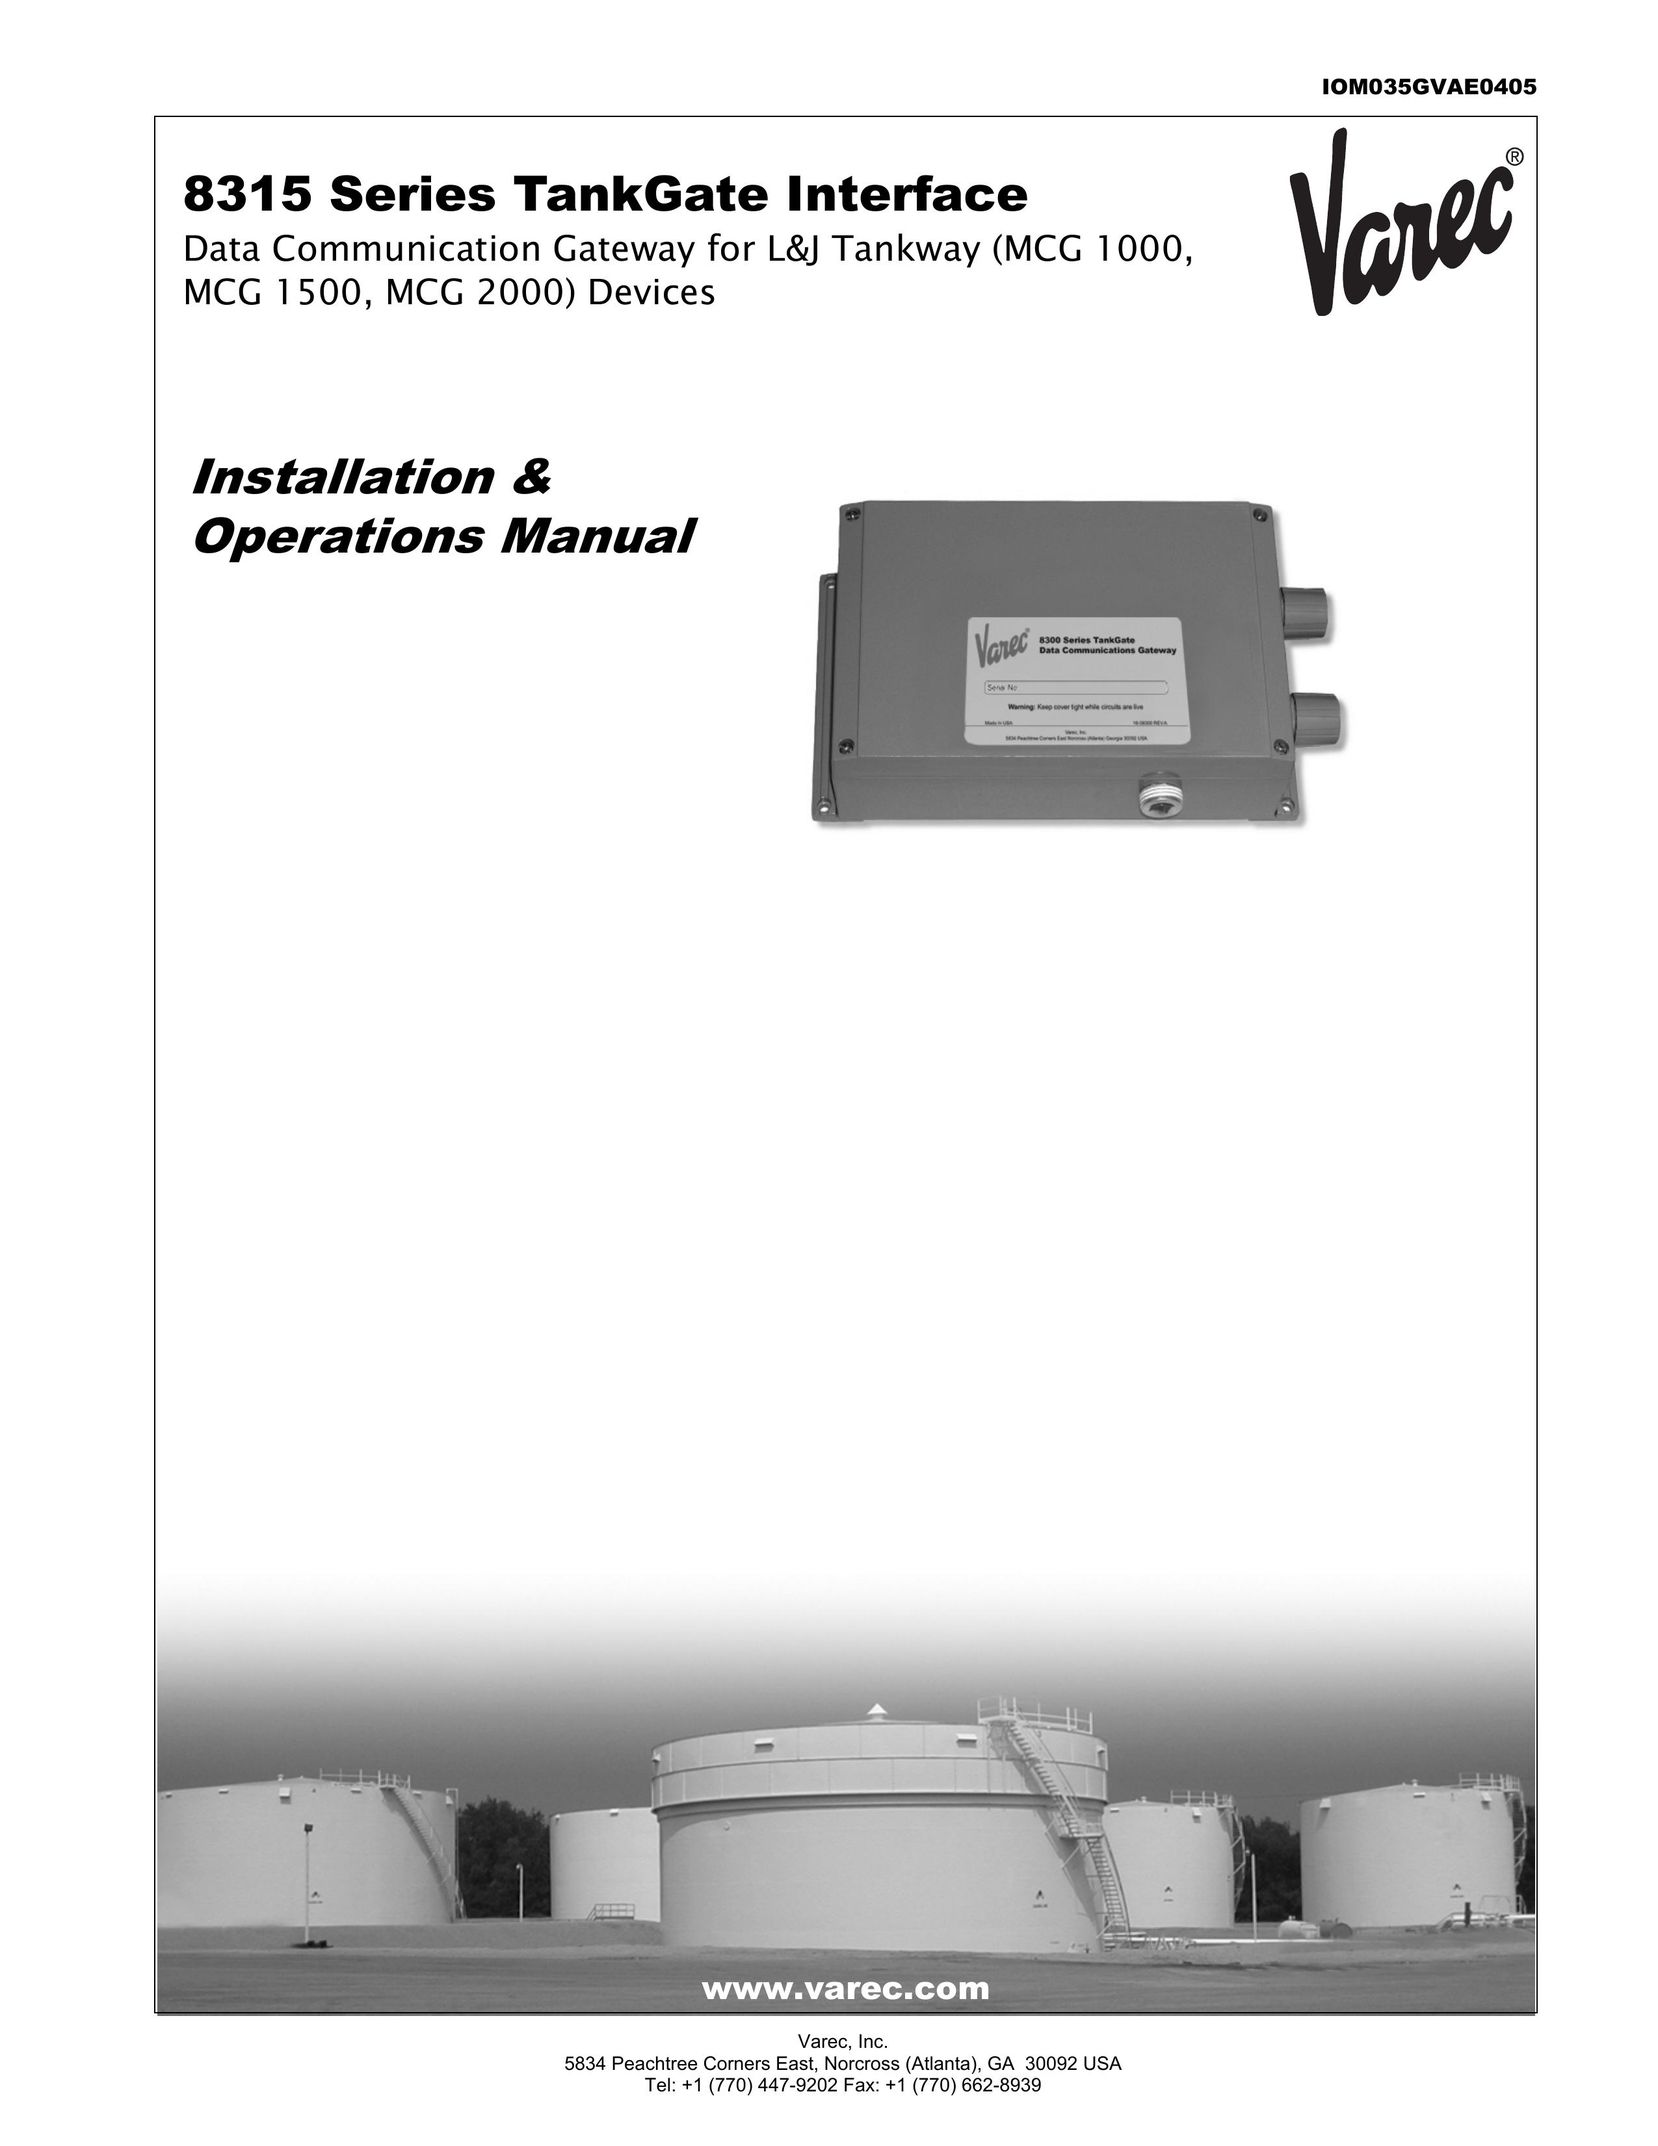 Varec 8315 Series Network Card User Manual